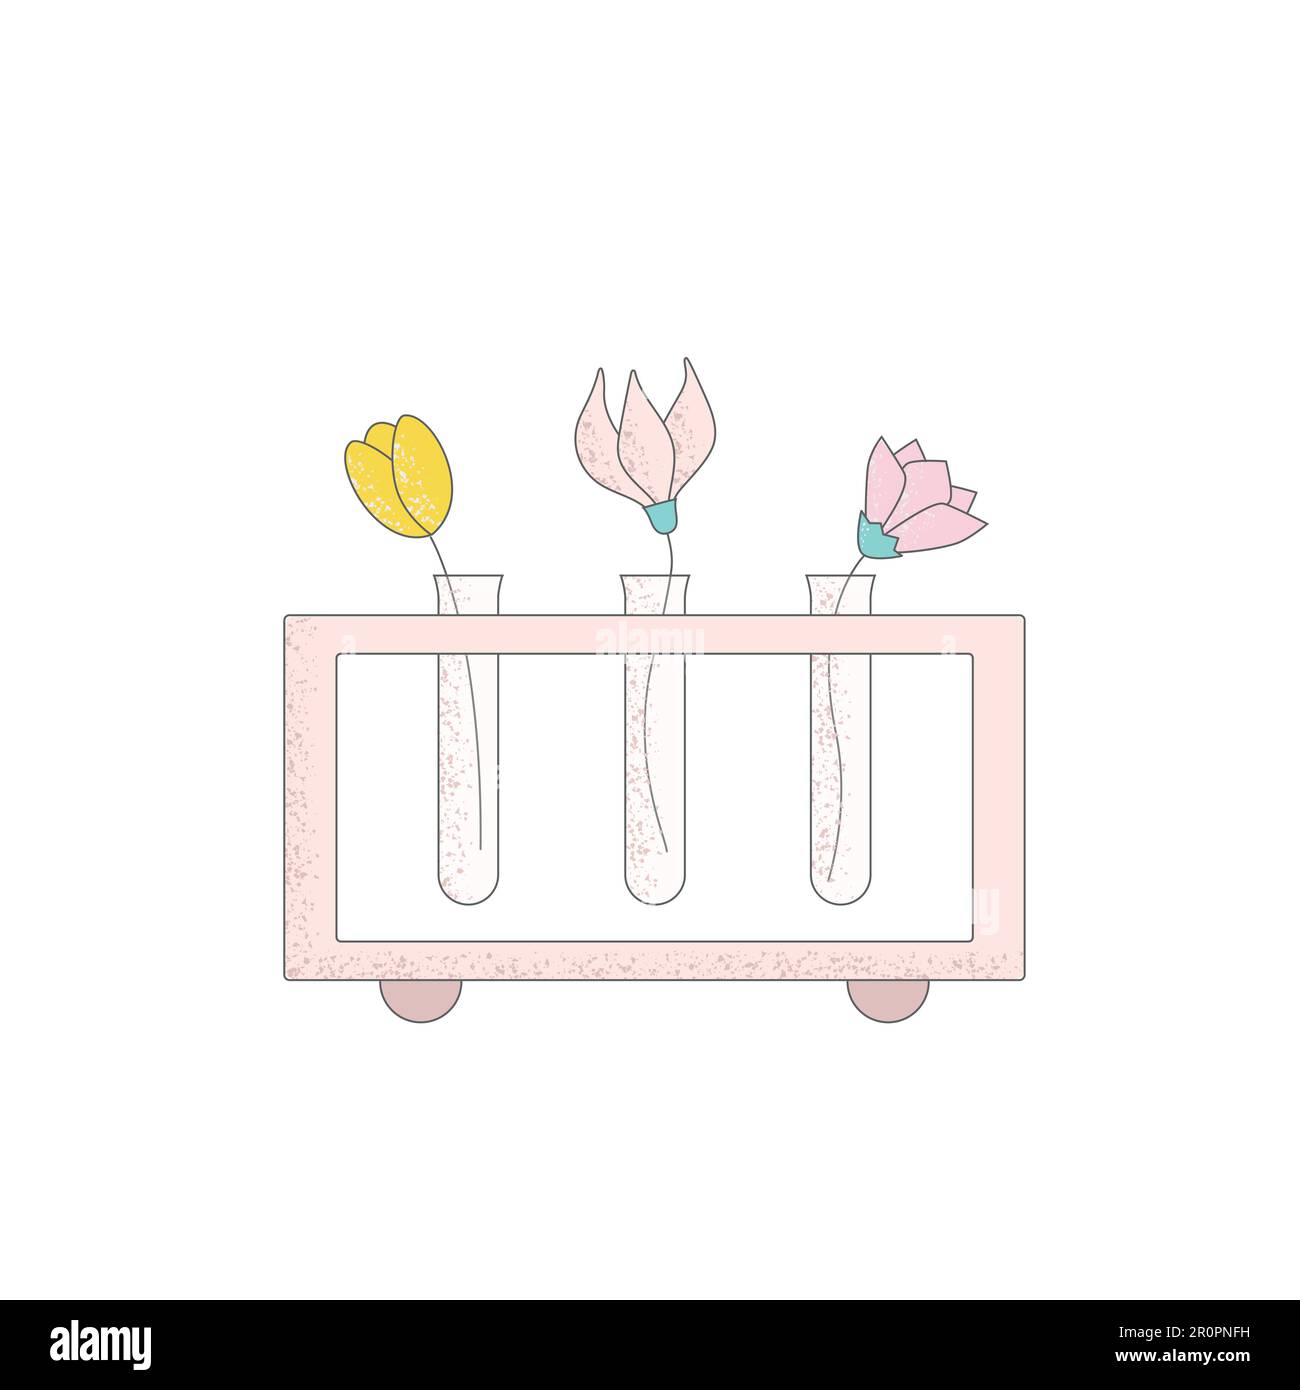 Moderna cartoon fiori in vaso come provetta. Semplici illustrazioni vettoriali floreali minimaliste per stampe, poster, biglietti, adesivi, decorazioni da parete. Illustrazione Vettoriale